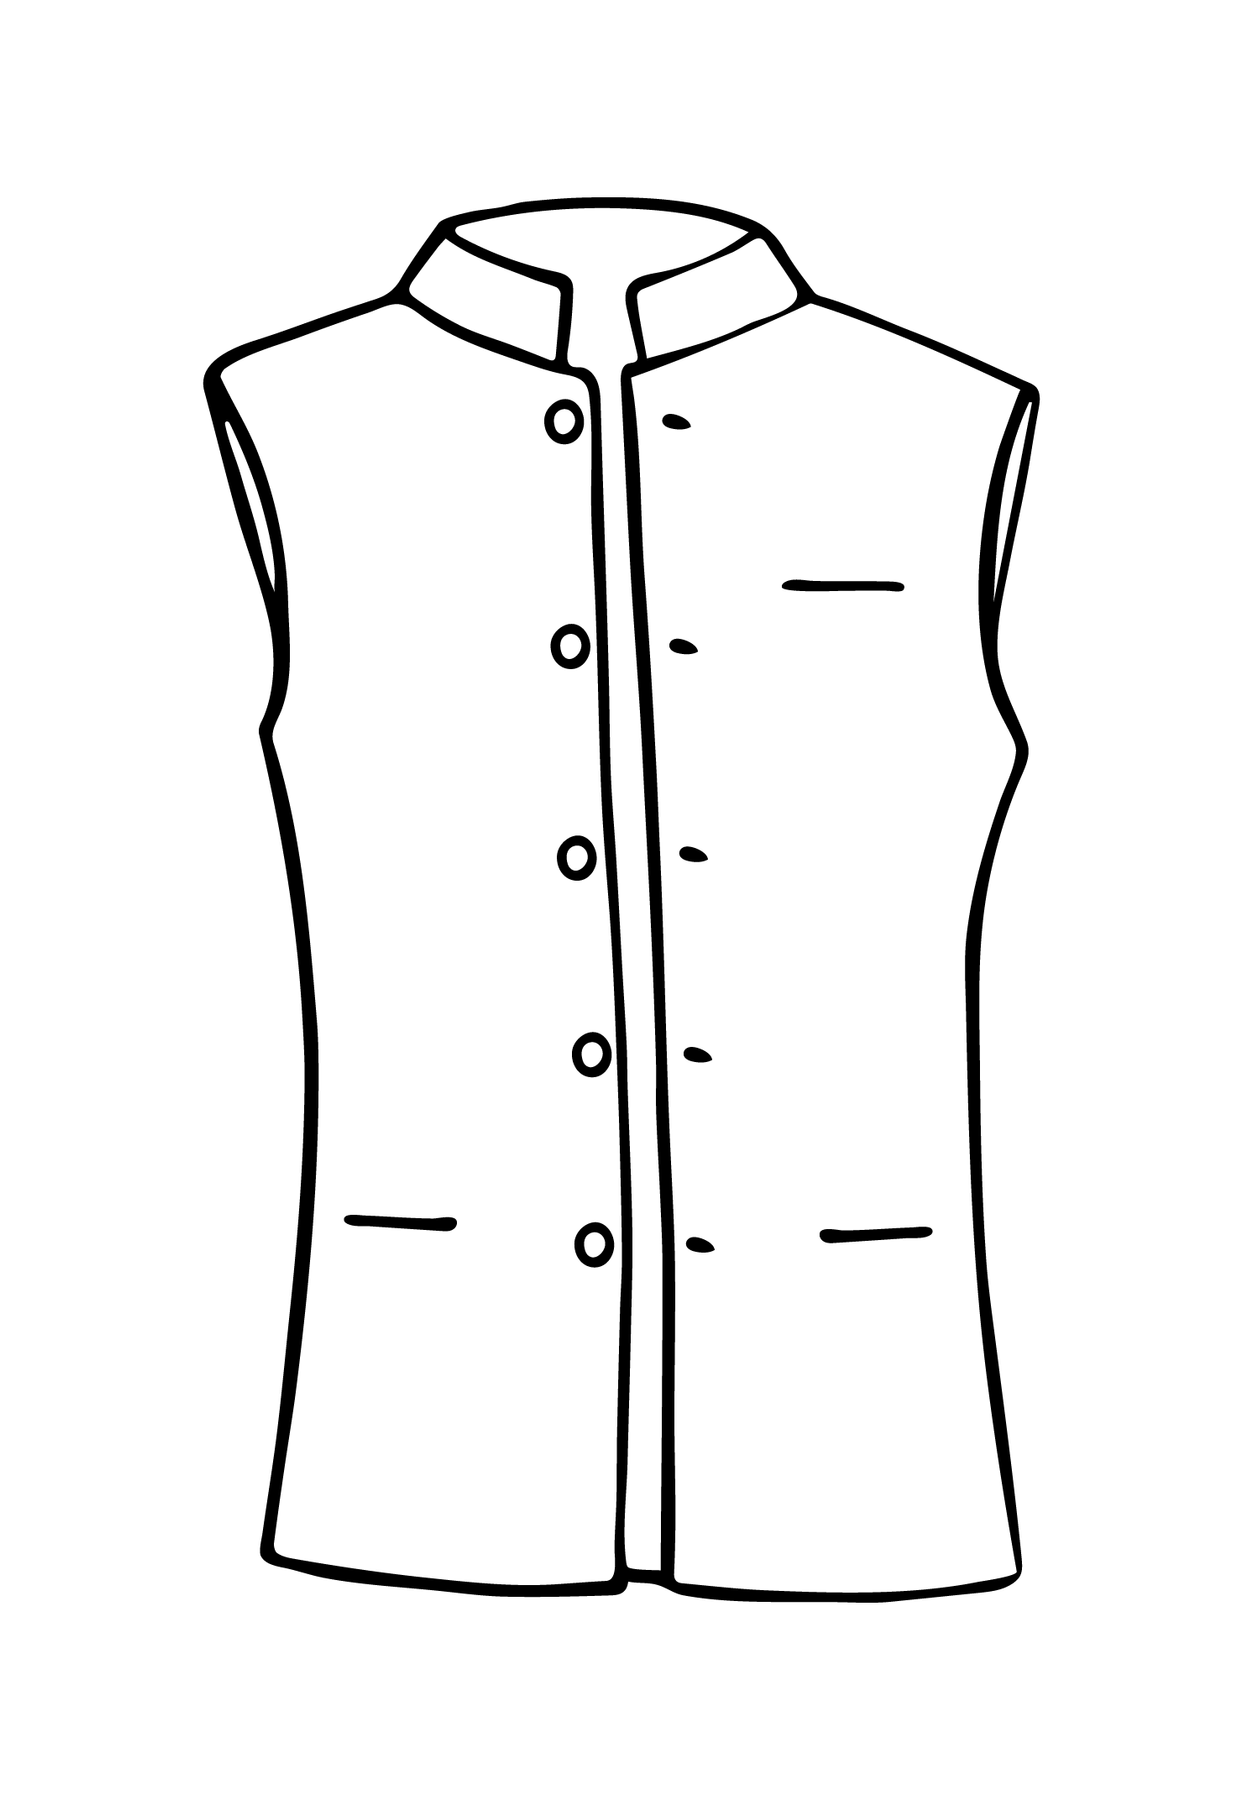 Free Downloads: Illustrator Vest Flat Sketches